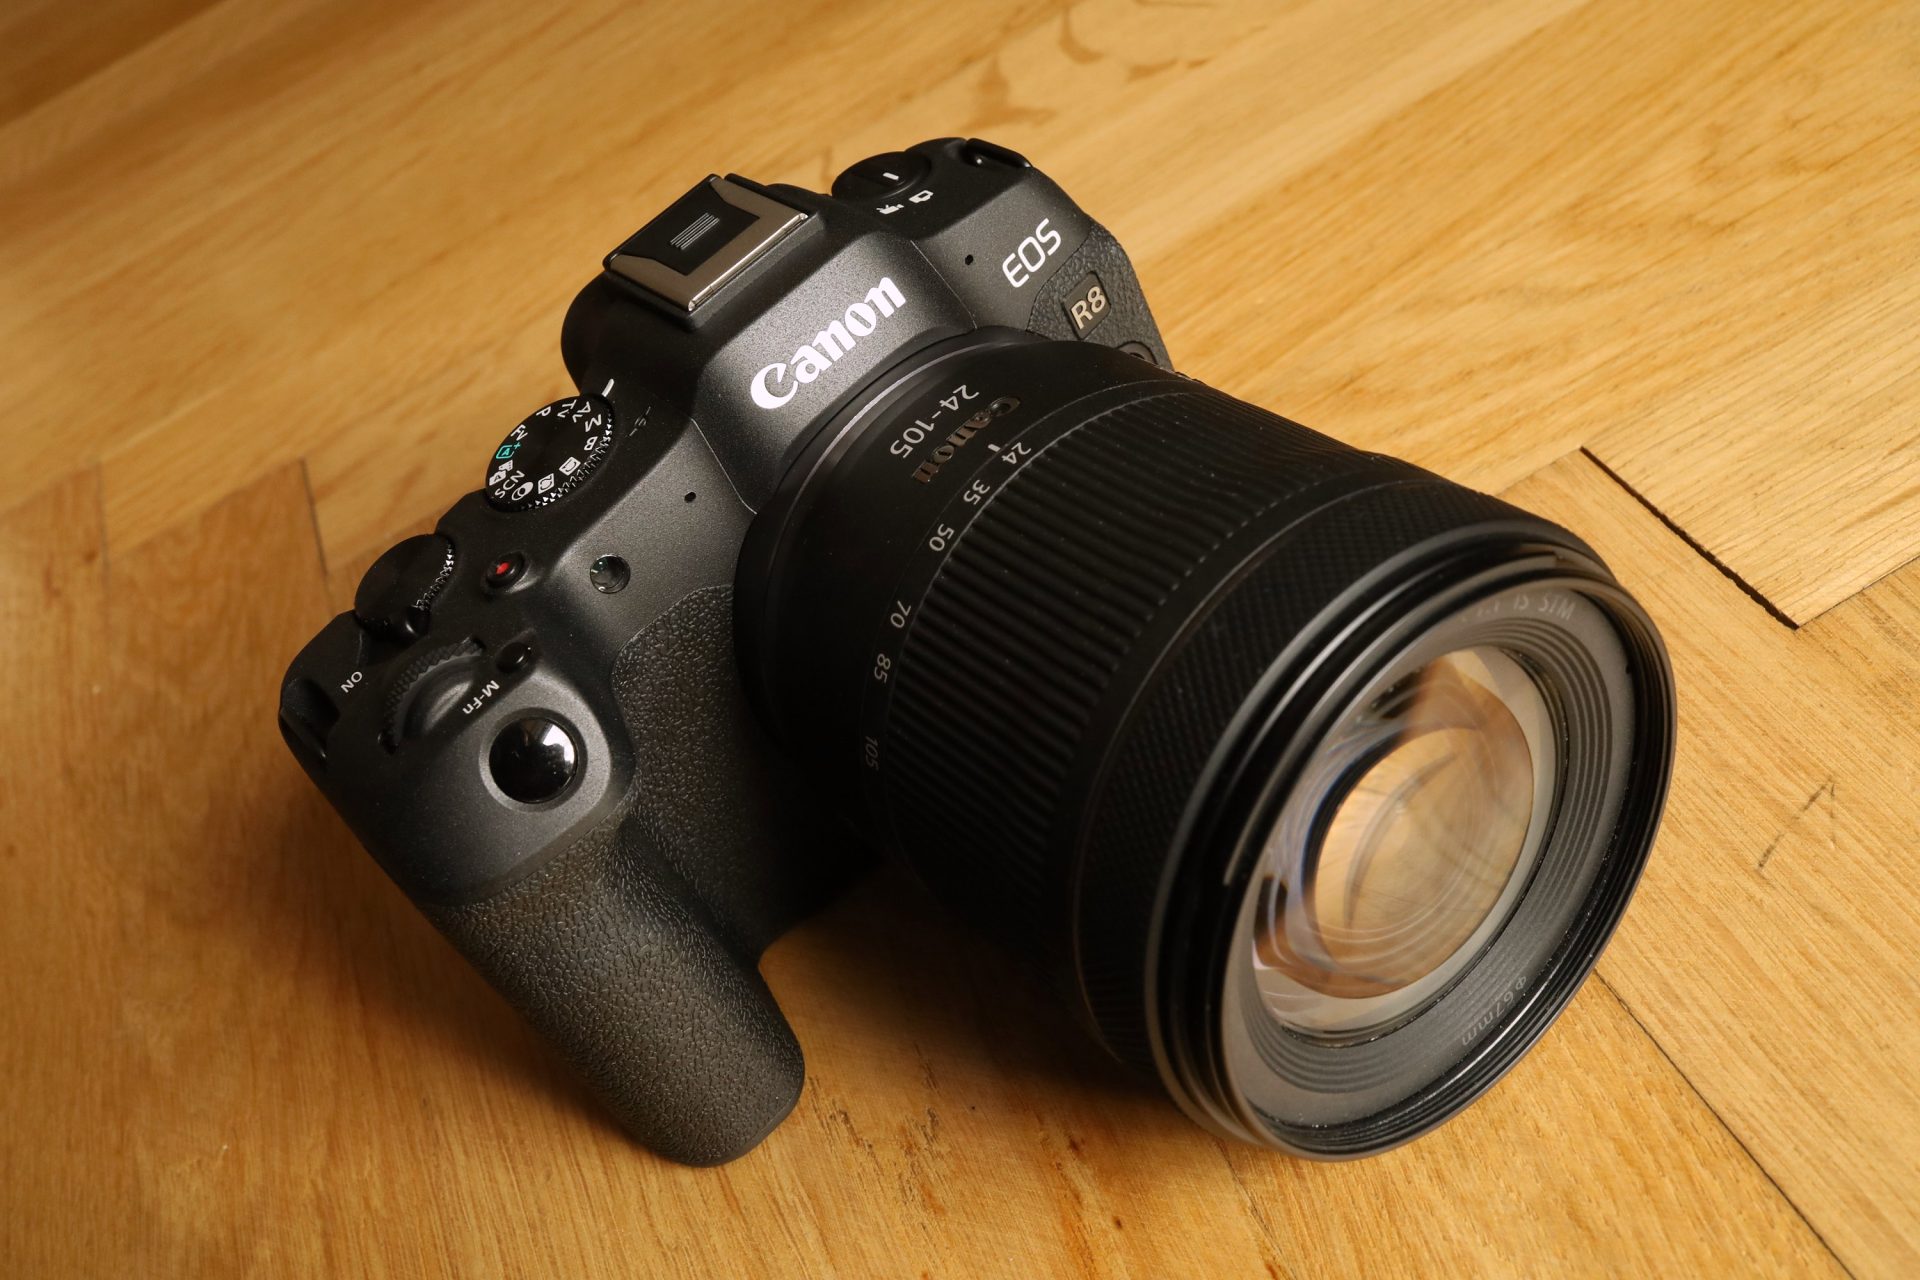 Canon EOS R8